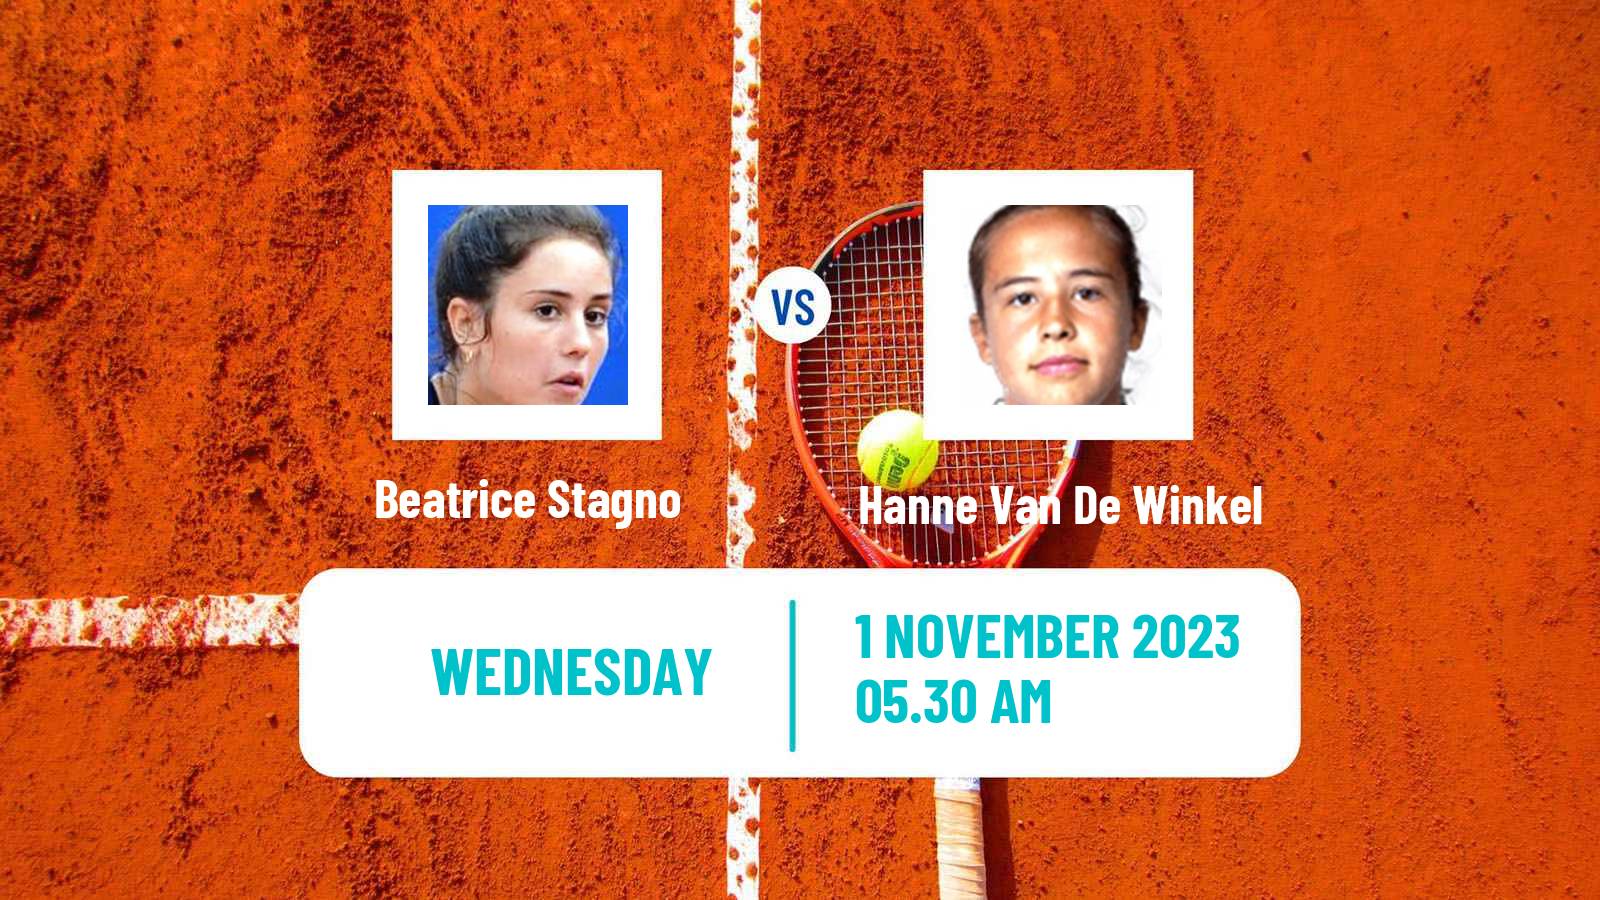 Tennis ITF W25 Monastir 4 Women Beatrice Stagno - Hanne Van De Winkel